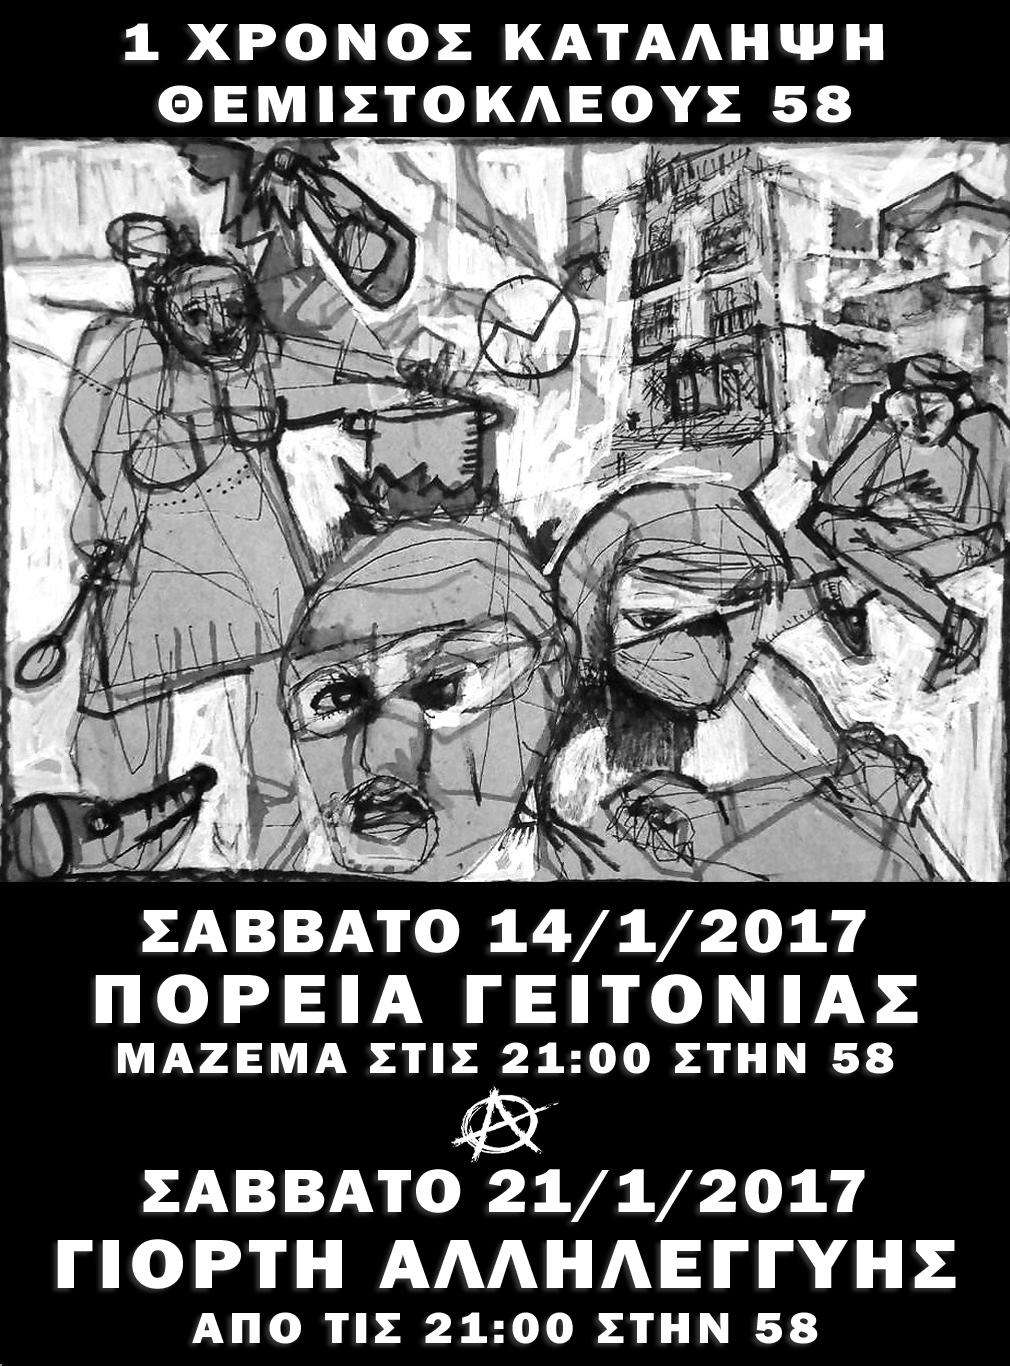 Αθήνα: Ένας χρόνος λειτουργίας της κατάληψης Θεμιστοκλέους 58